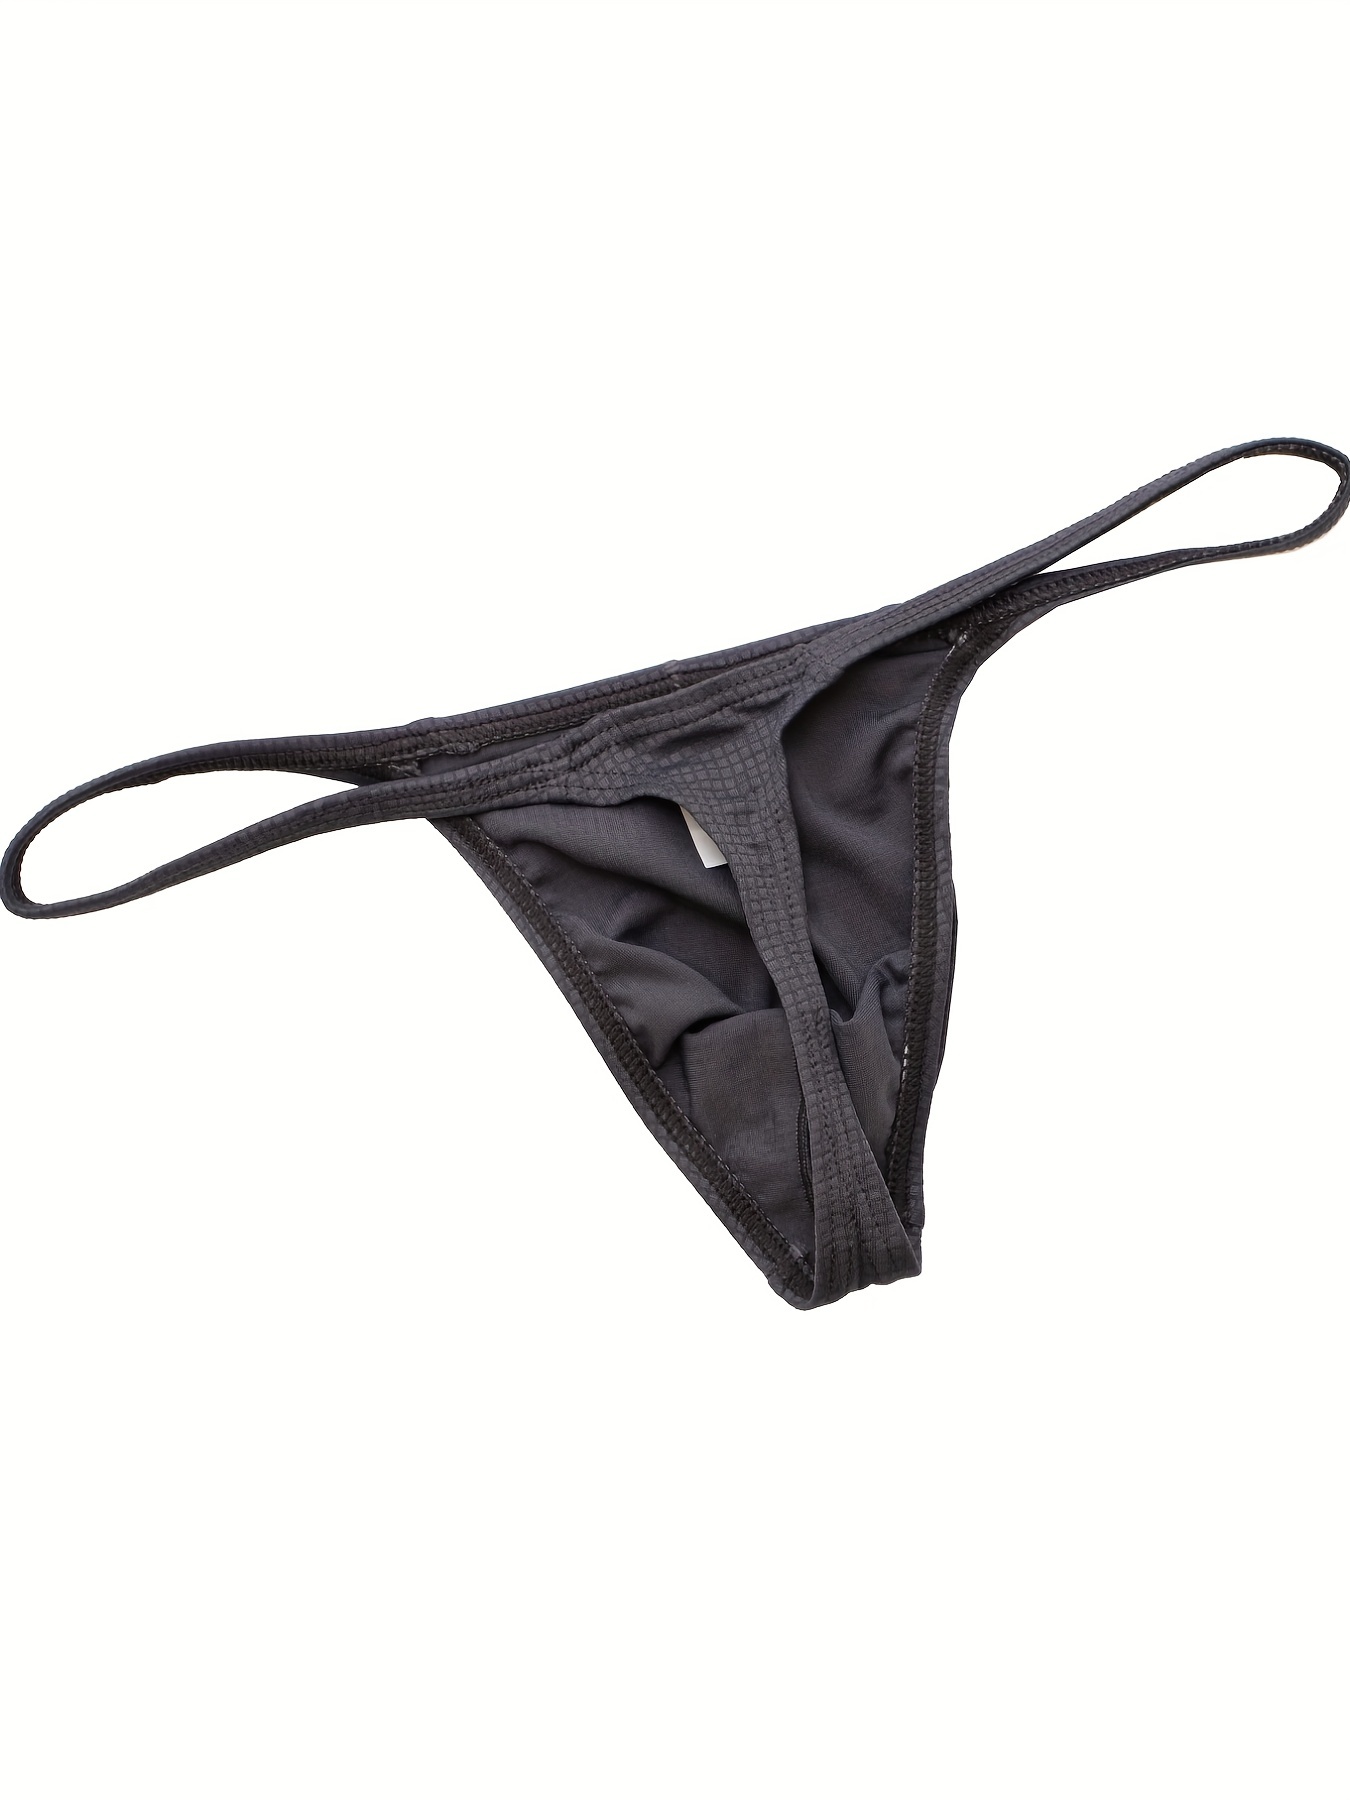 Men Novelty Elephant G-strings Panties Thongs Underwear Briefs Ling